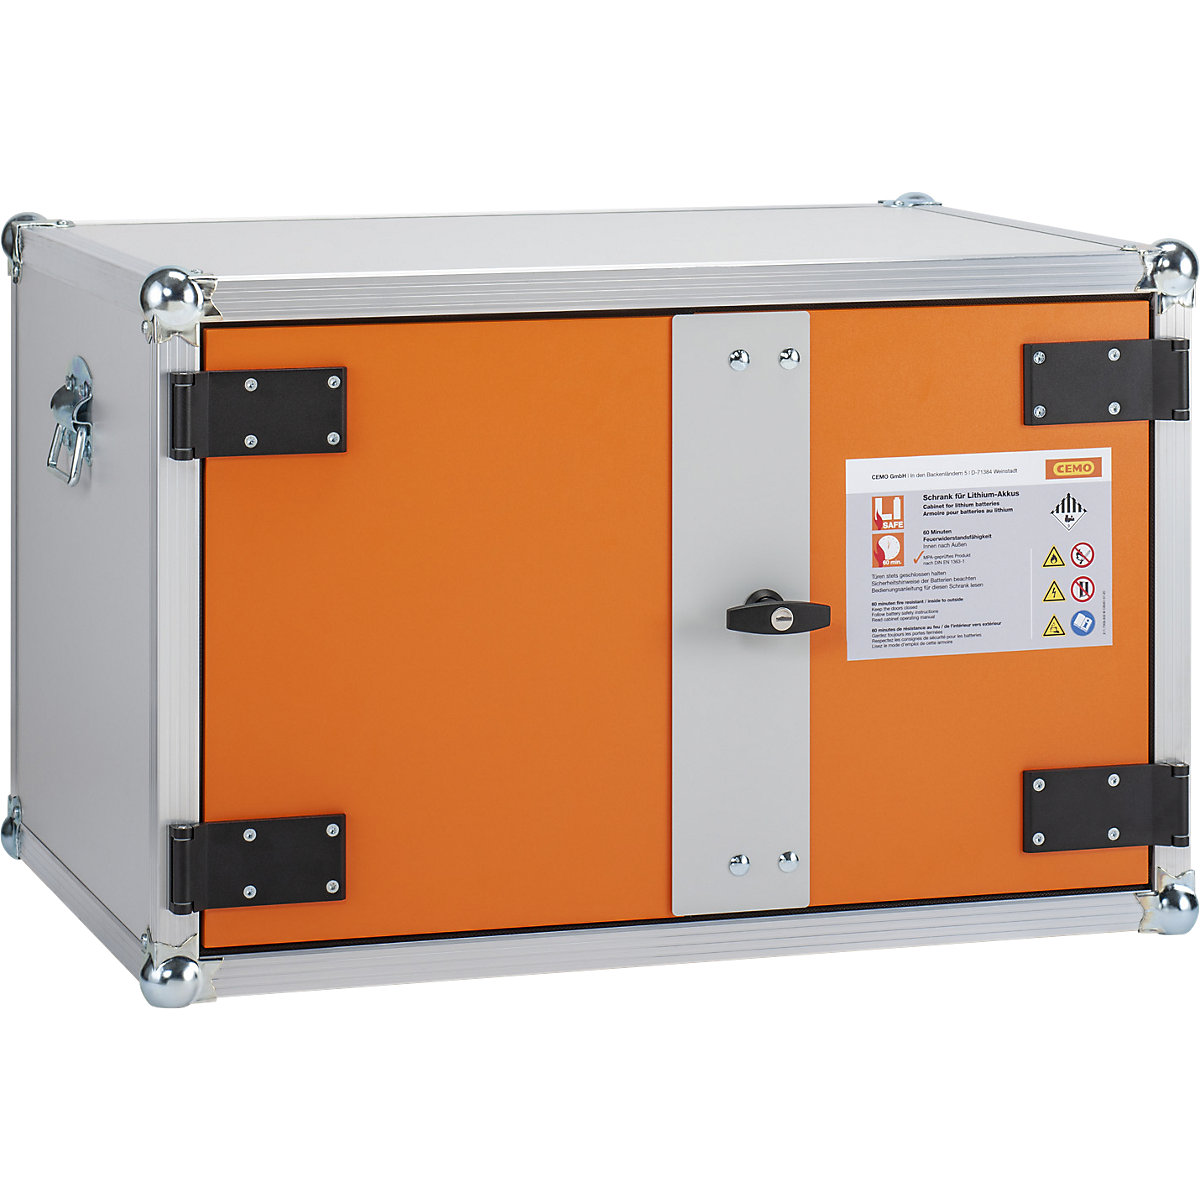 BASIC biztonsági akkumulátortöltő szekrény – CEMO